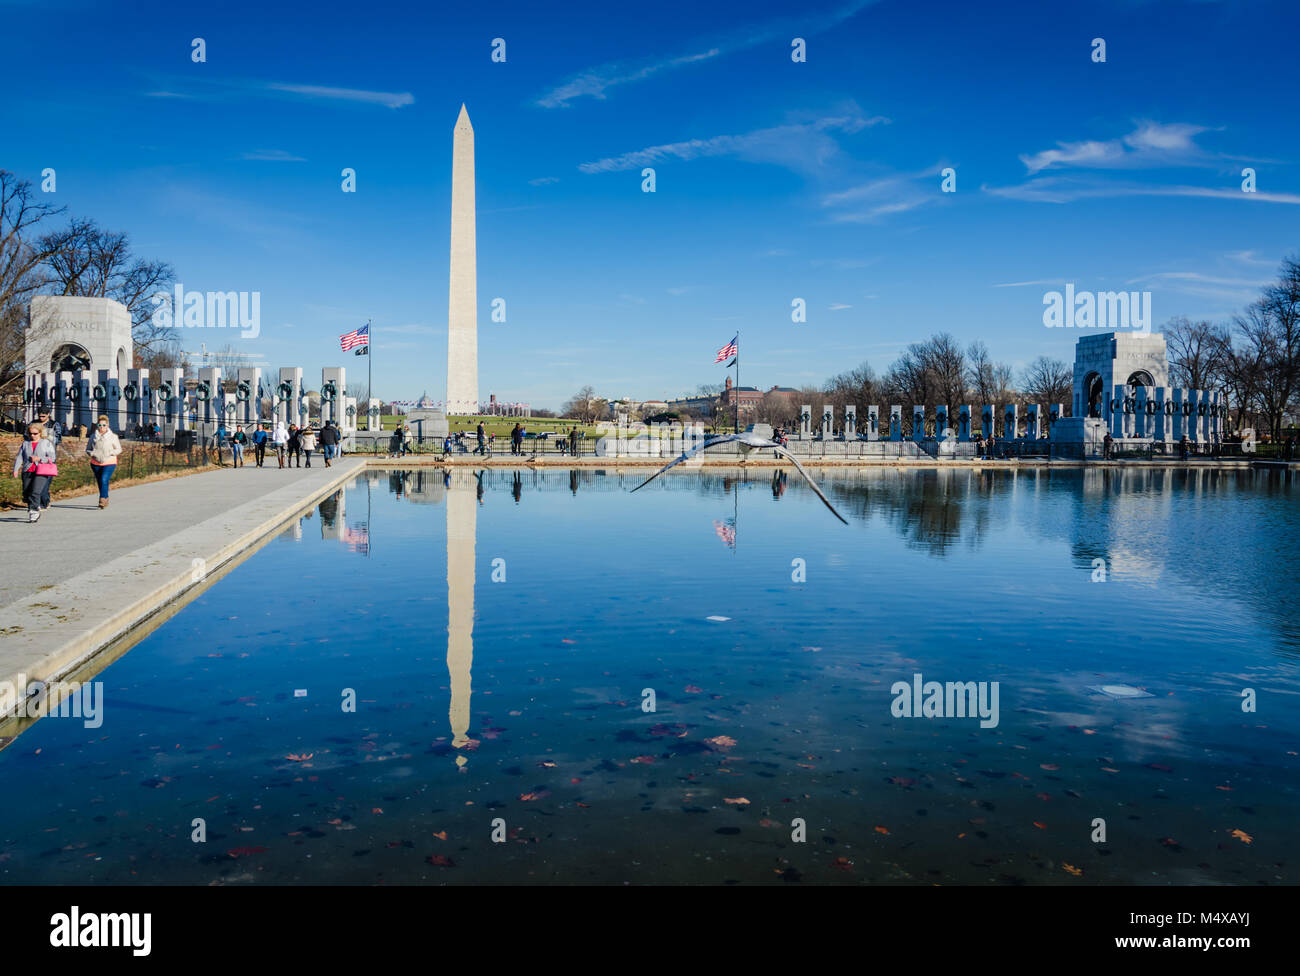 Reflexiones del Monumento a Washington, el Memorial de la Segunda Guerra Mundial, y una gaviota volando sobre la piscina reflectante en el National Mall en Washington DC. Foto de stock